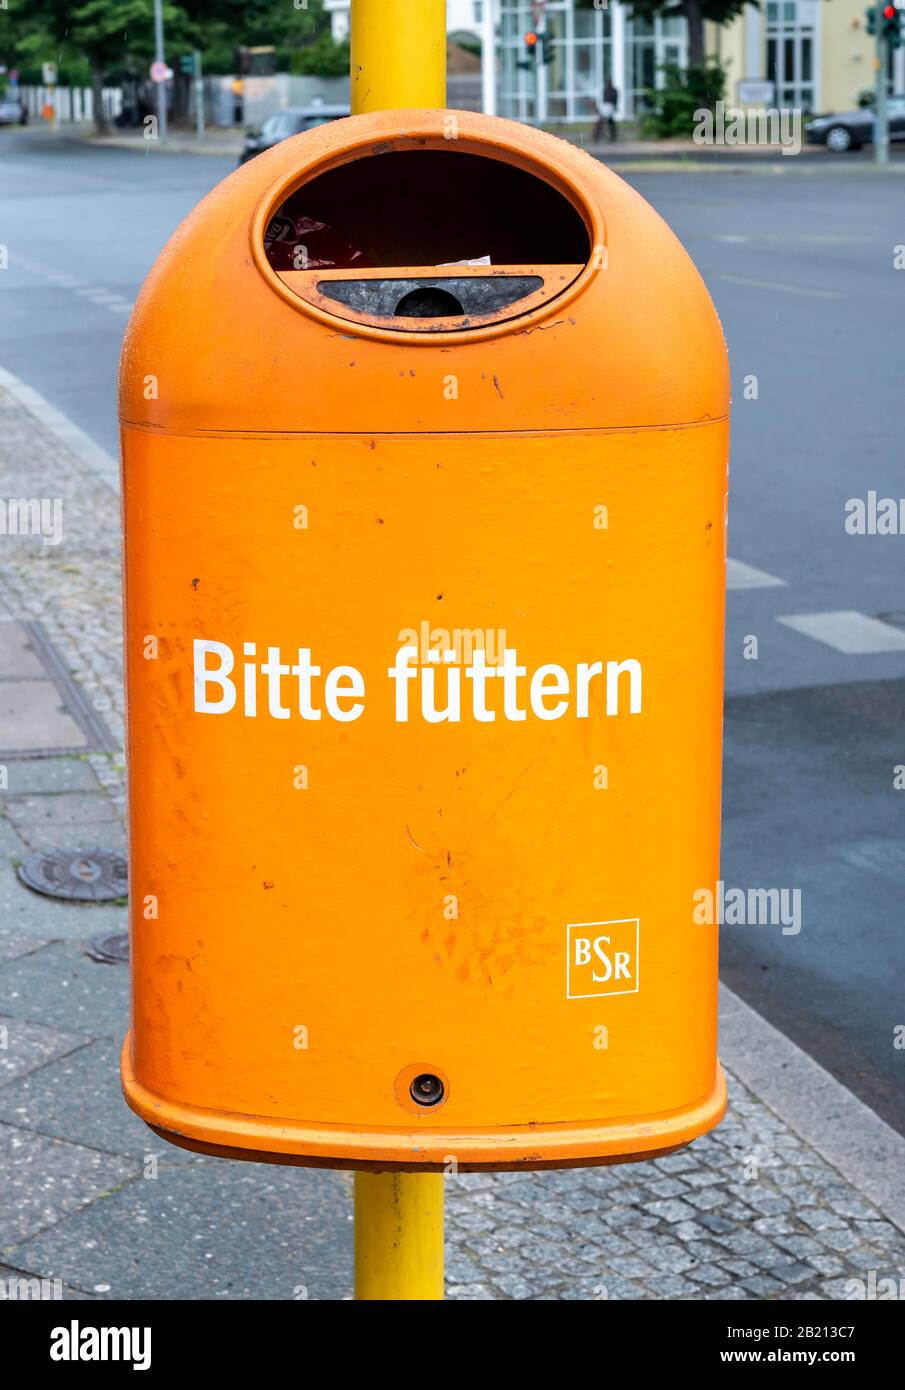 Drôle de poubelle orange avec l'inscription Bitte fuetern, Berlin,  Allemagne Photo Stock - Alamy